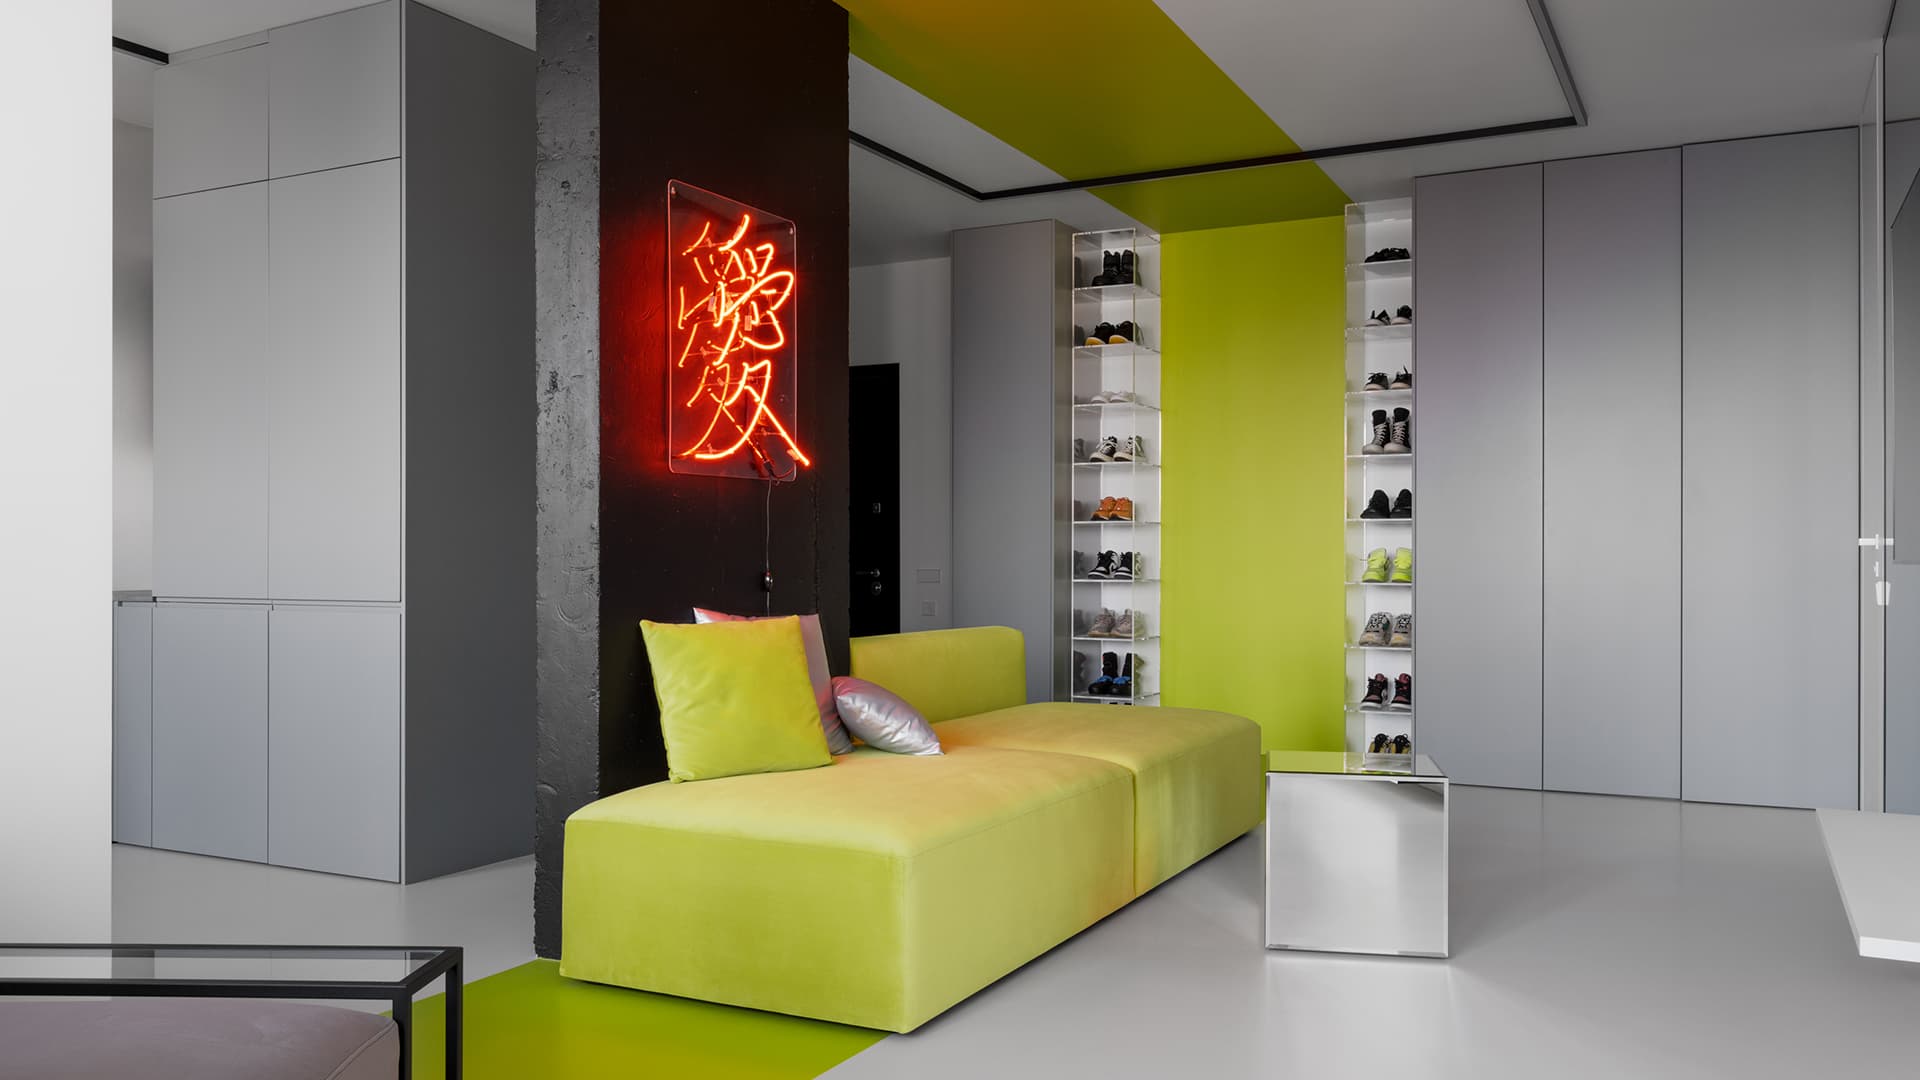 Свежие цвета в технологичном интерьере квартиры для студента – проект Рустэма Уразметова